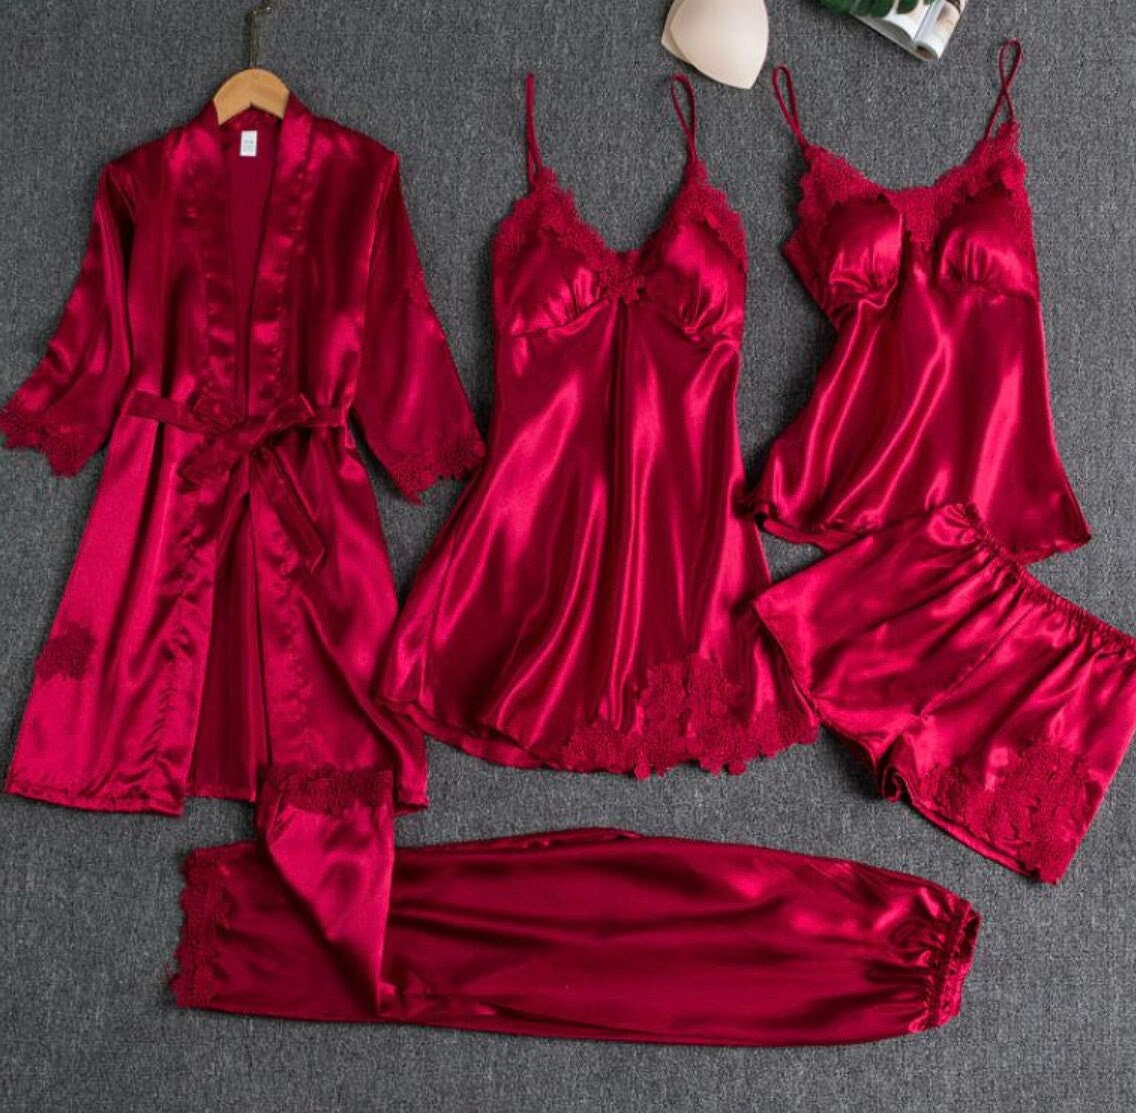 Red Satin Pyjamas 5 Piece Night Set Red Satin Dress Lace Robe